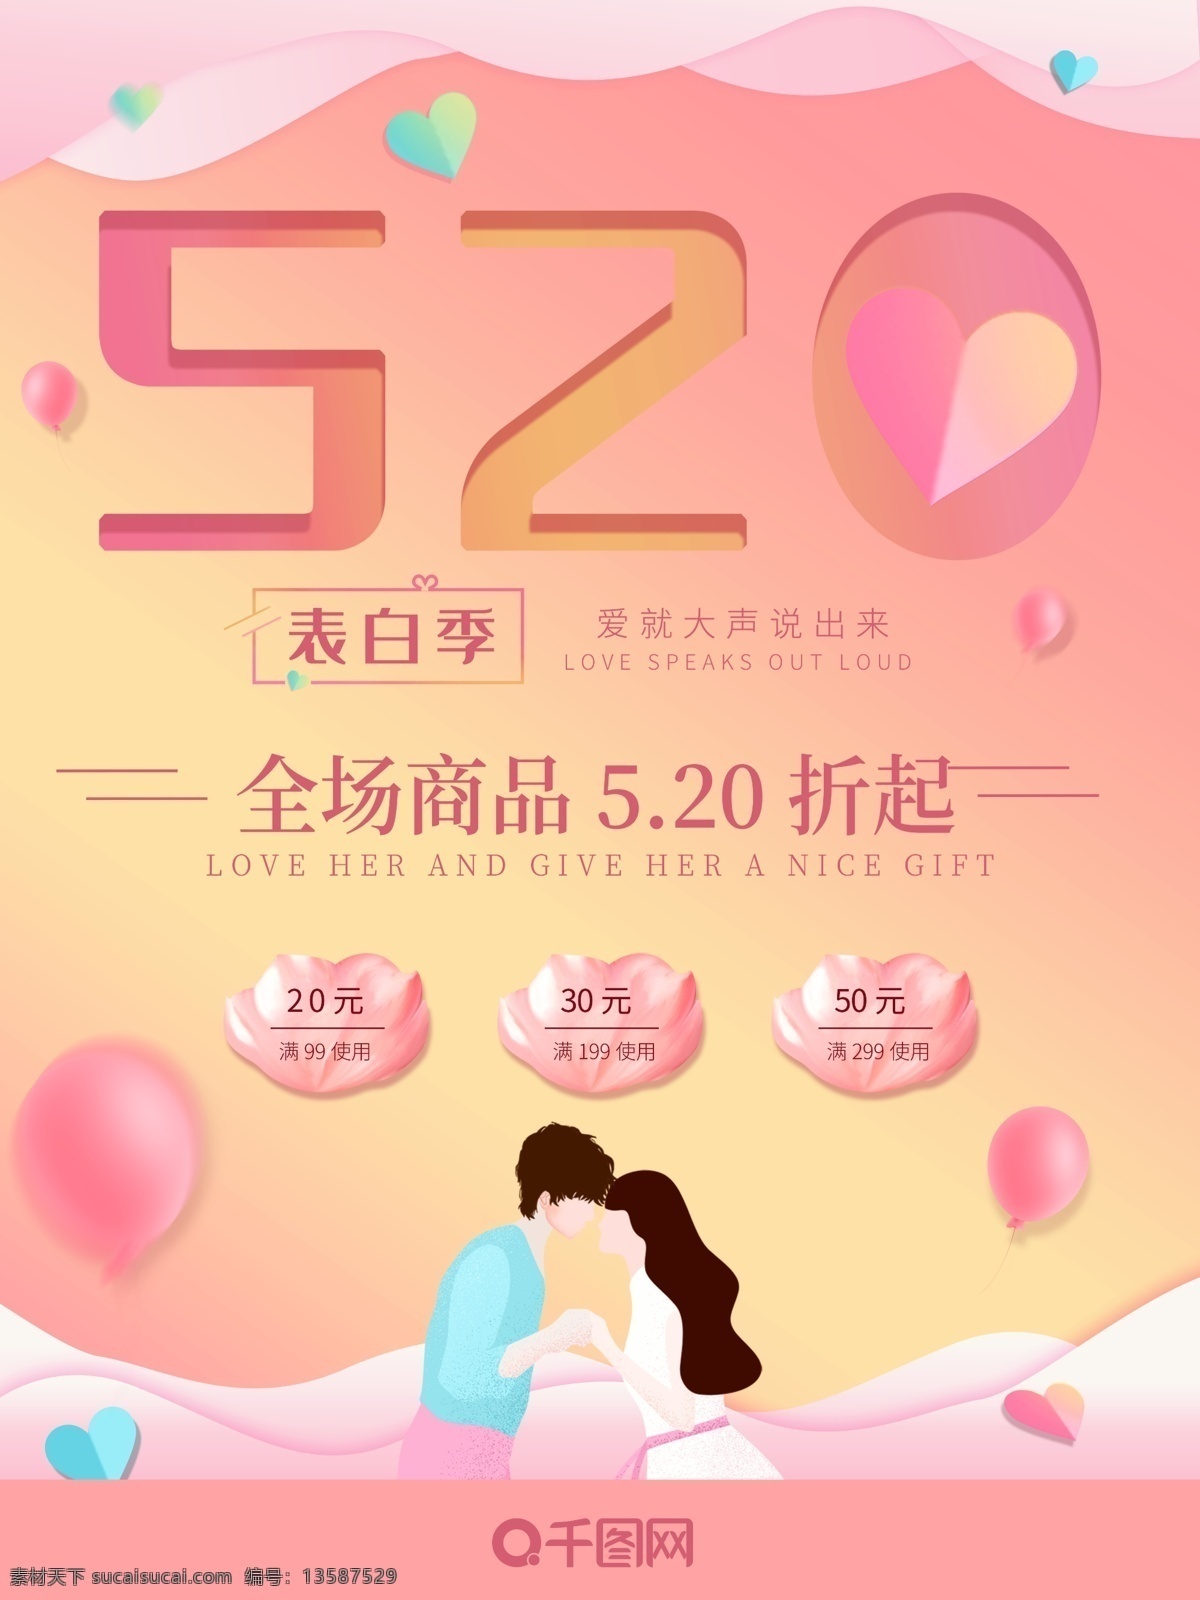 原创 粉色 折纸 520 情人节 促销 海报 渐变海报 模板 促销海报模板